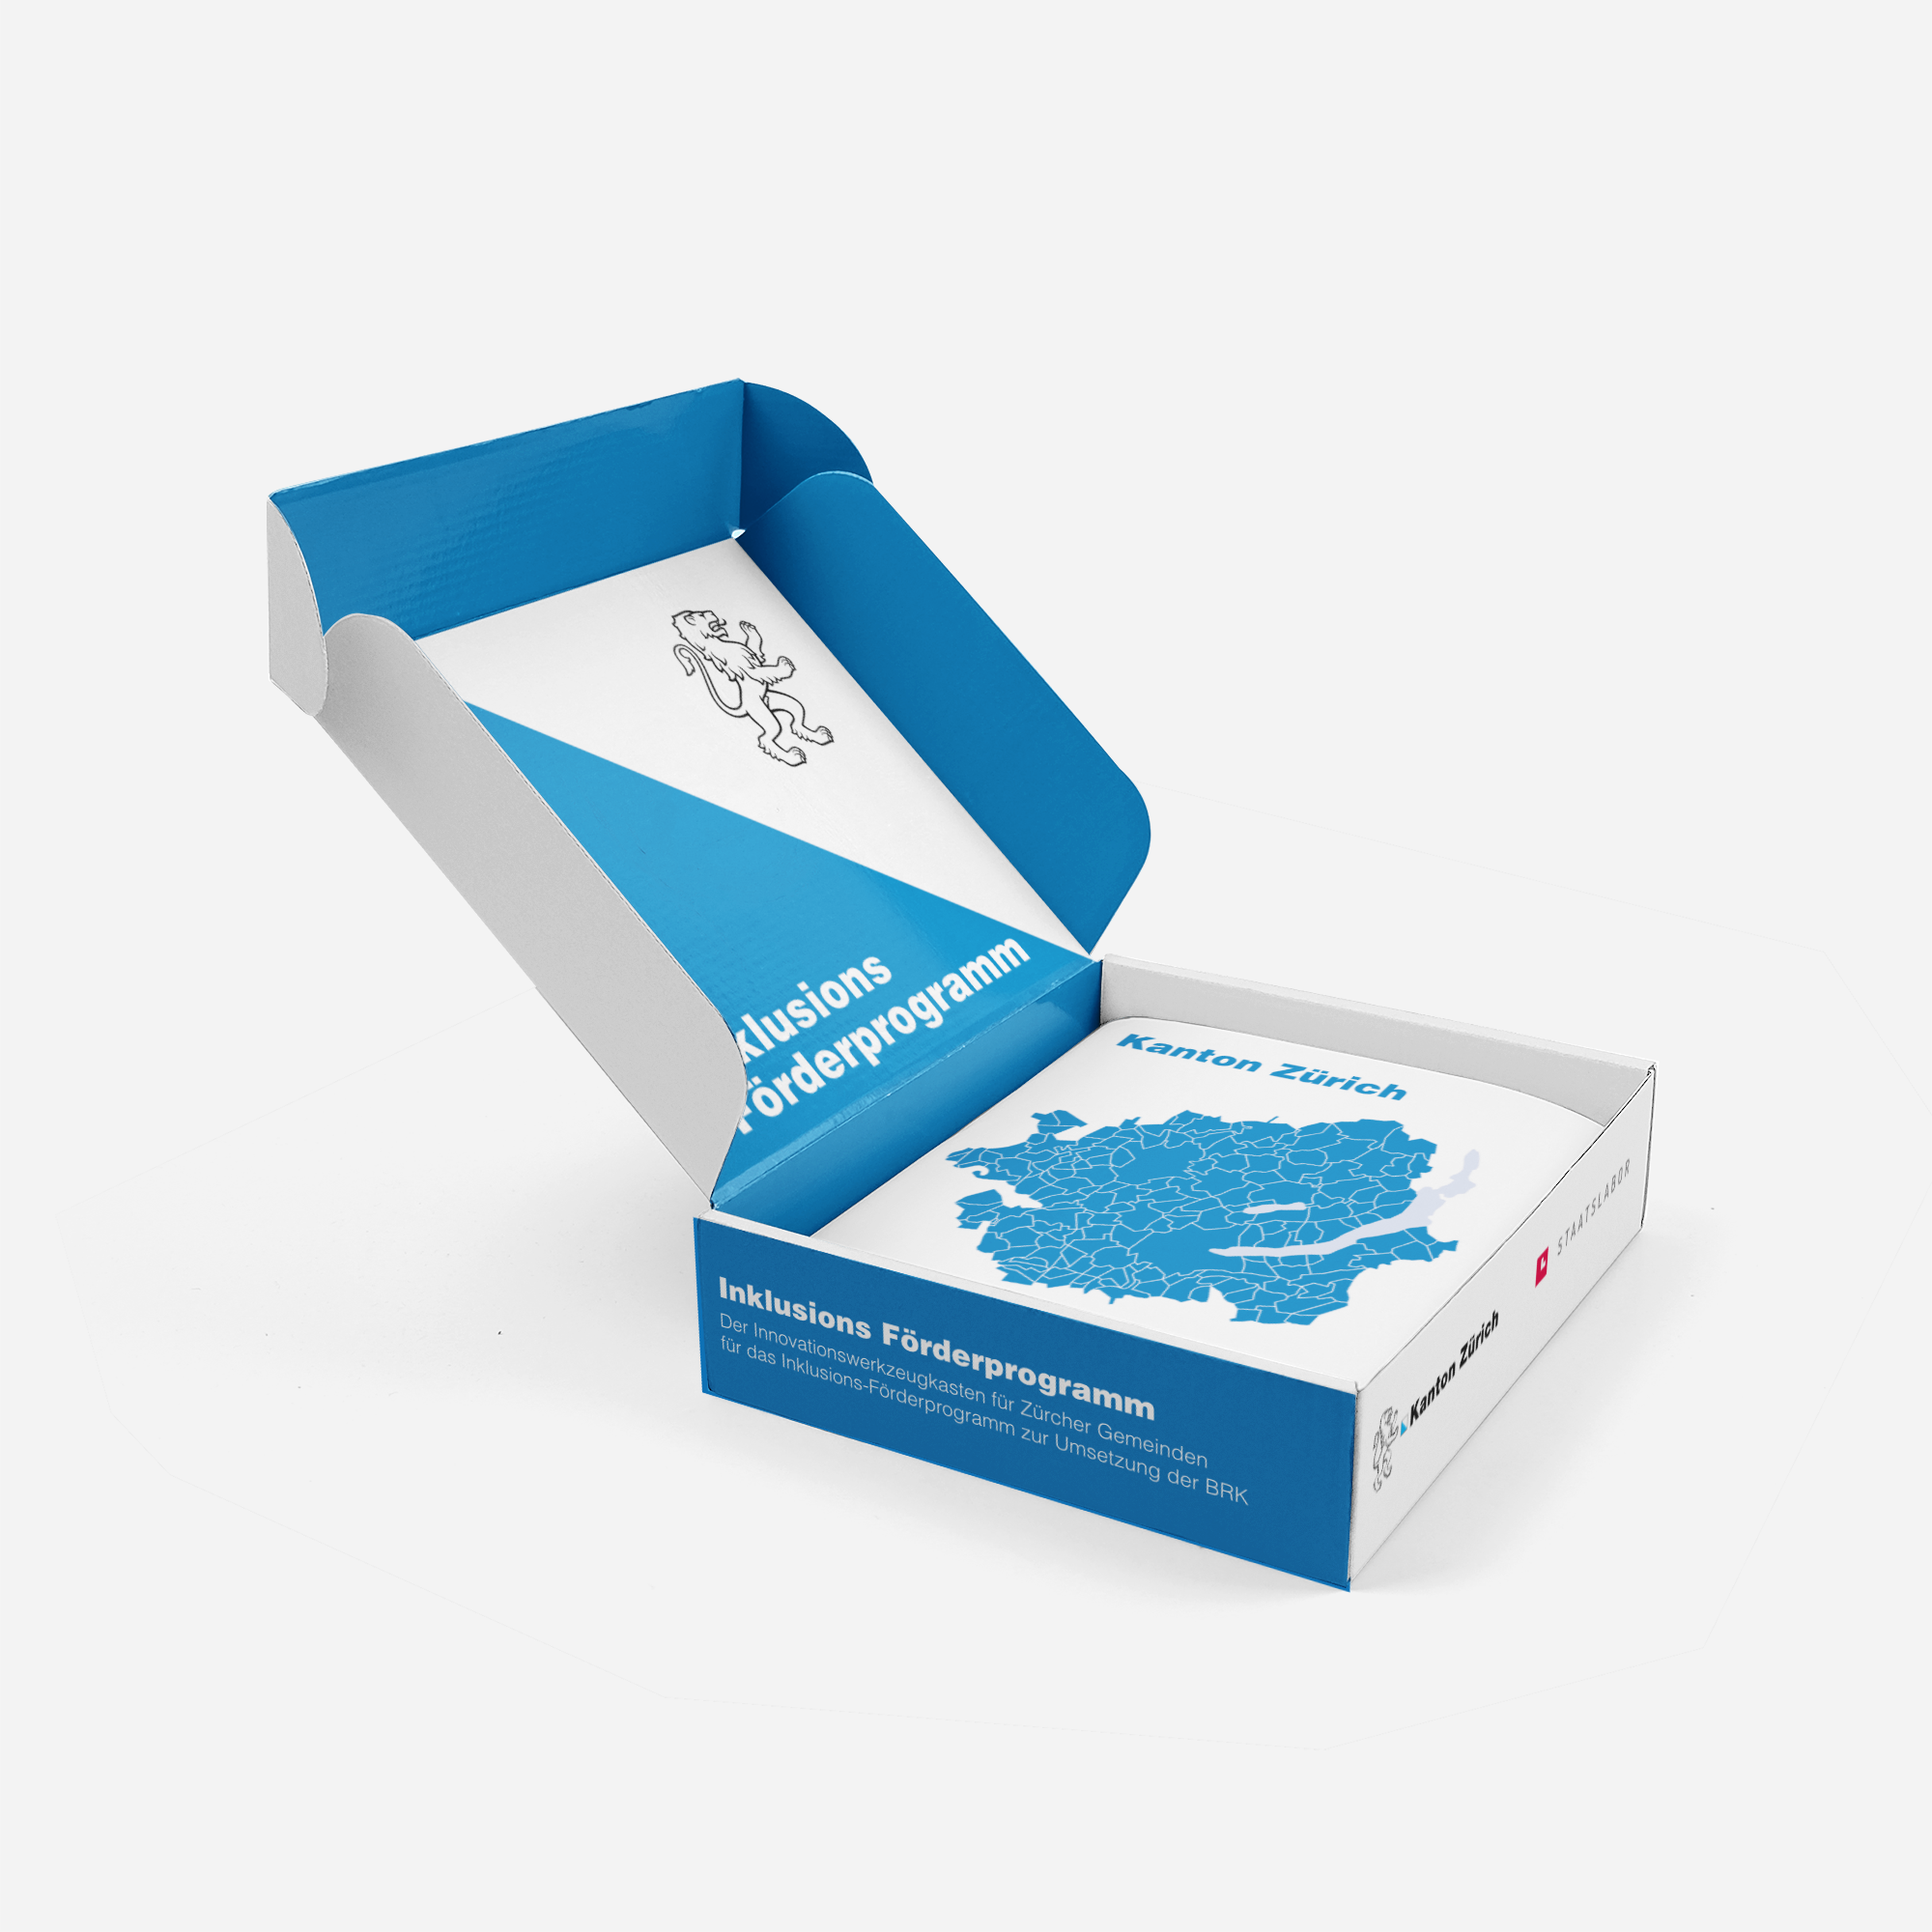 Darstellung einer Kartonschachtel mit einer Abbildung des Kantons Zürich und der Beschriftung "Inklusions-Förderprogramm"